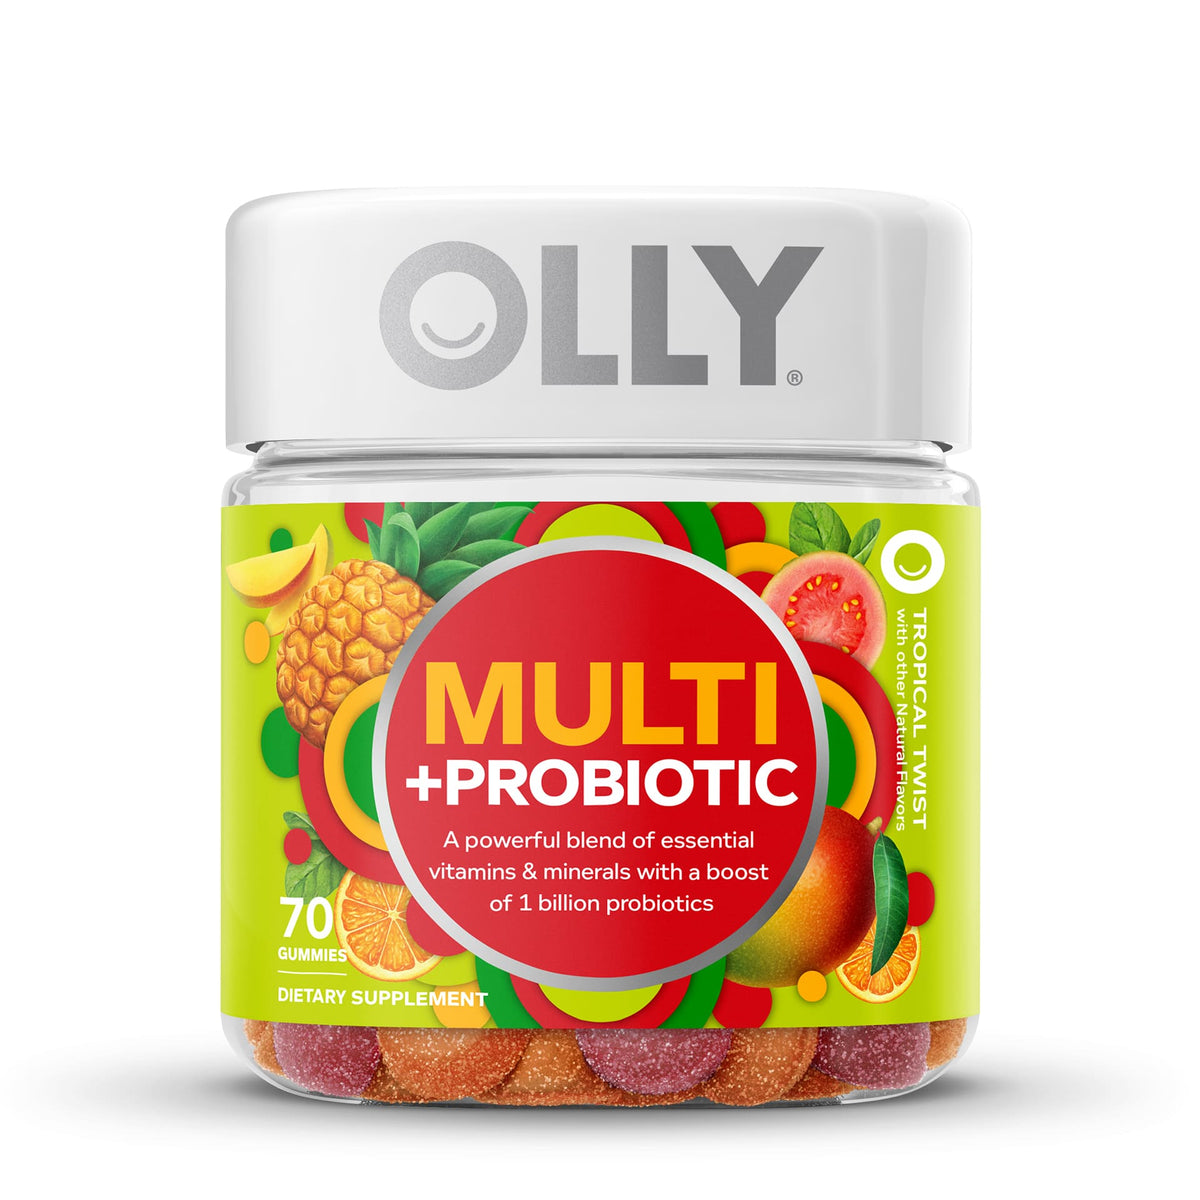 Adult Multi + Probiotic Vitamins Image